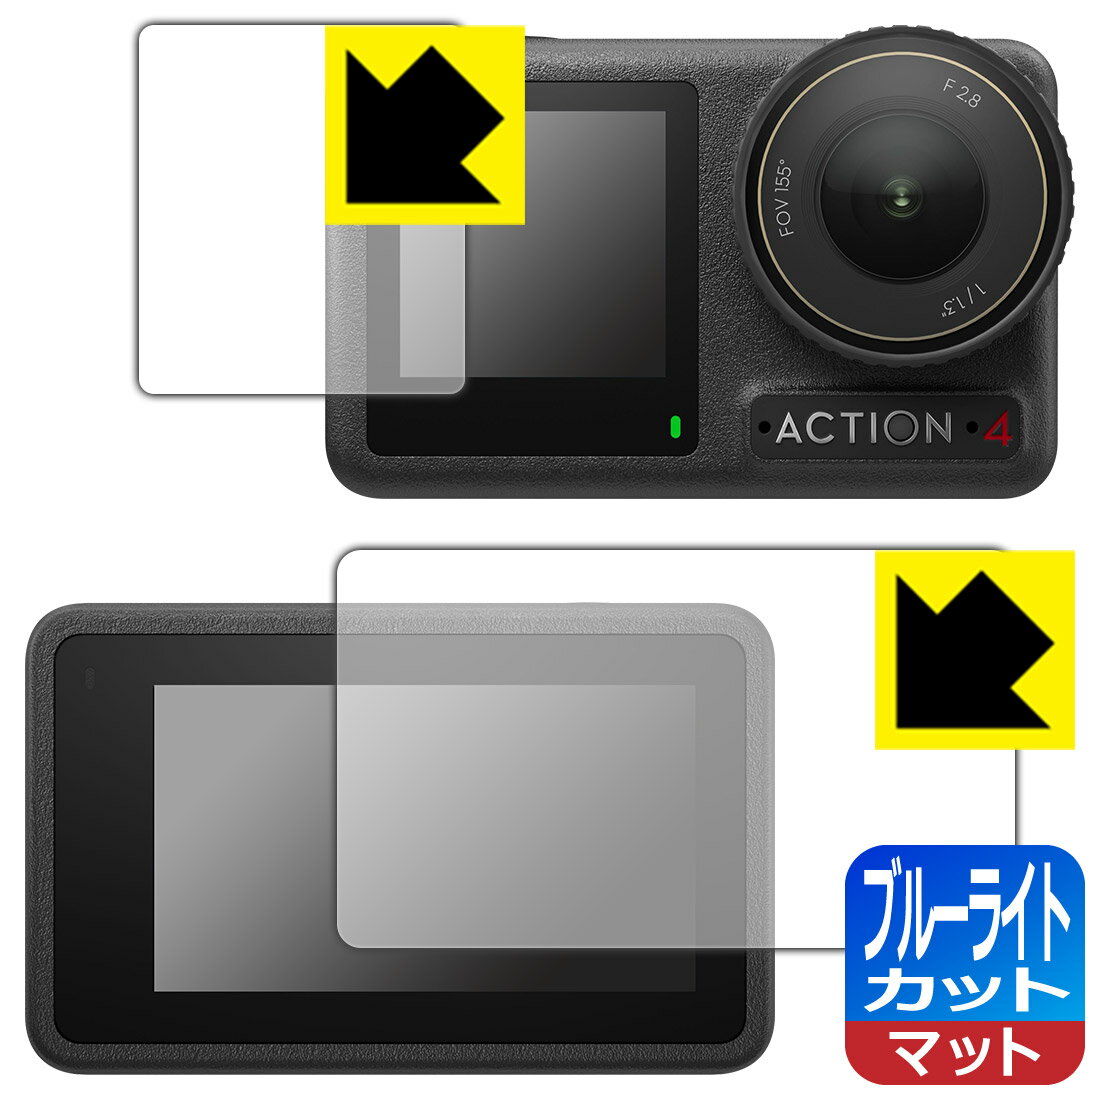 ブルーライトカット【反射低減】保護フィルム DJI Osmo Action 4 (メイン用/サブ用) 日本製 自社製造直販